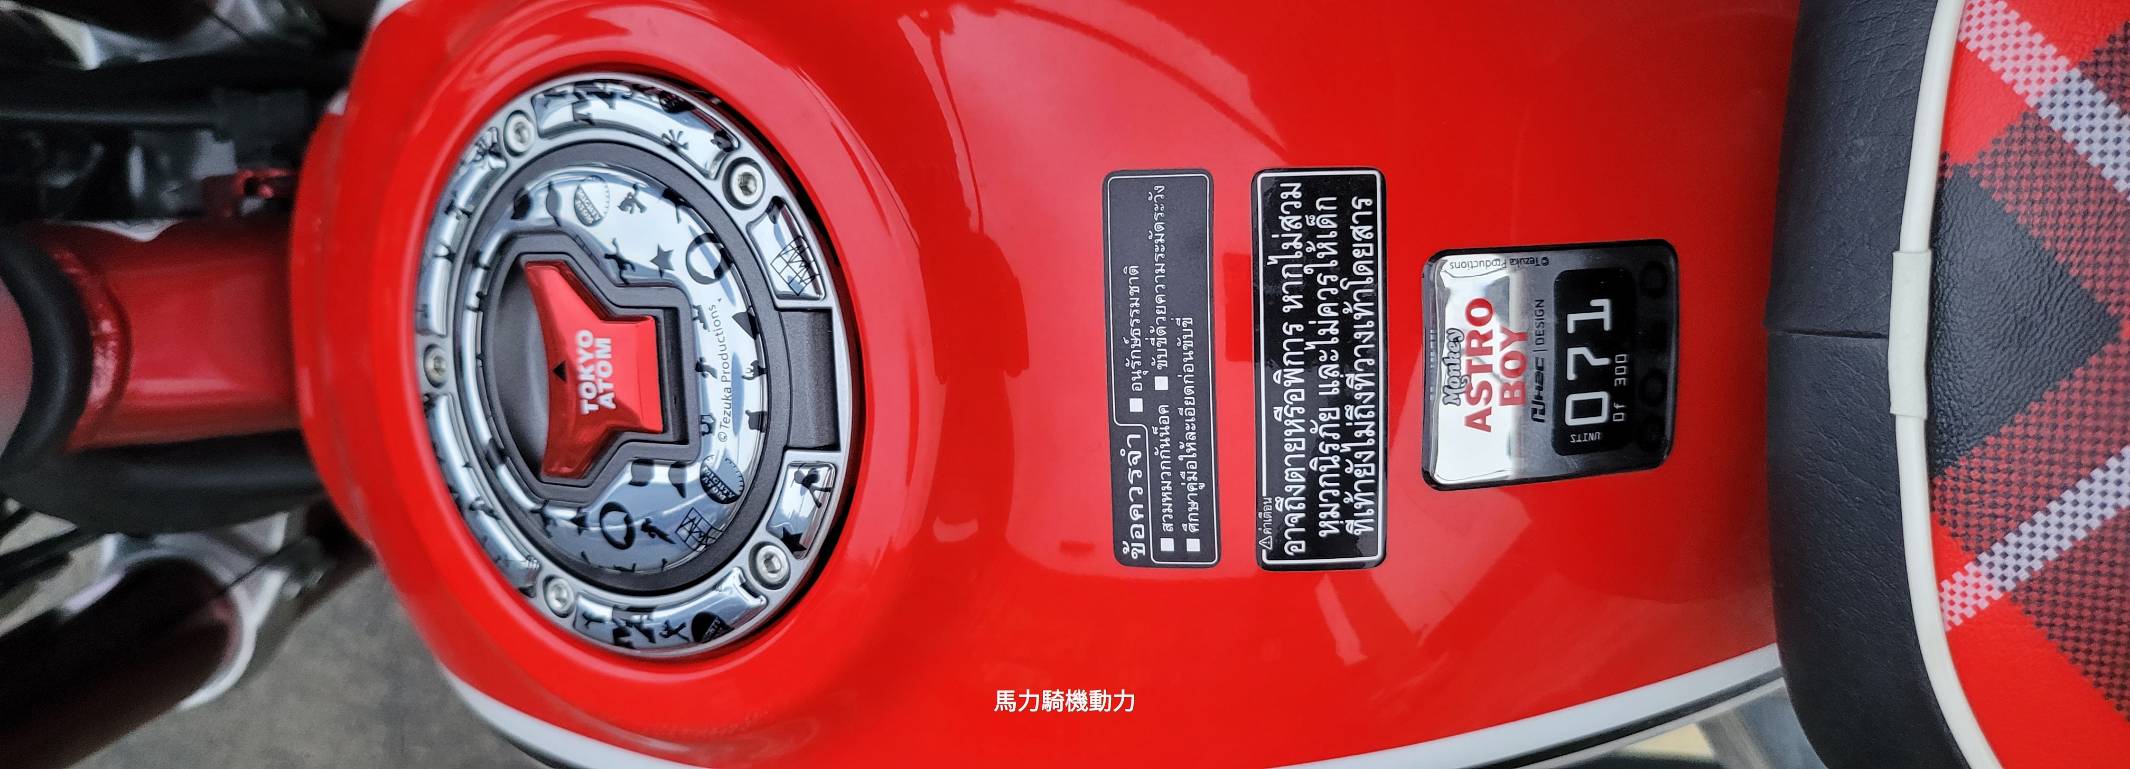 HONDA Monkey 125新車出售中 Monkey小金鋼限量特仕71/300 | 個人自售